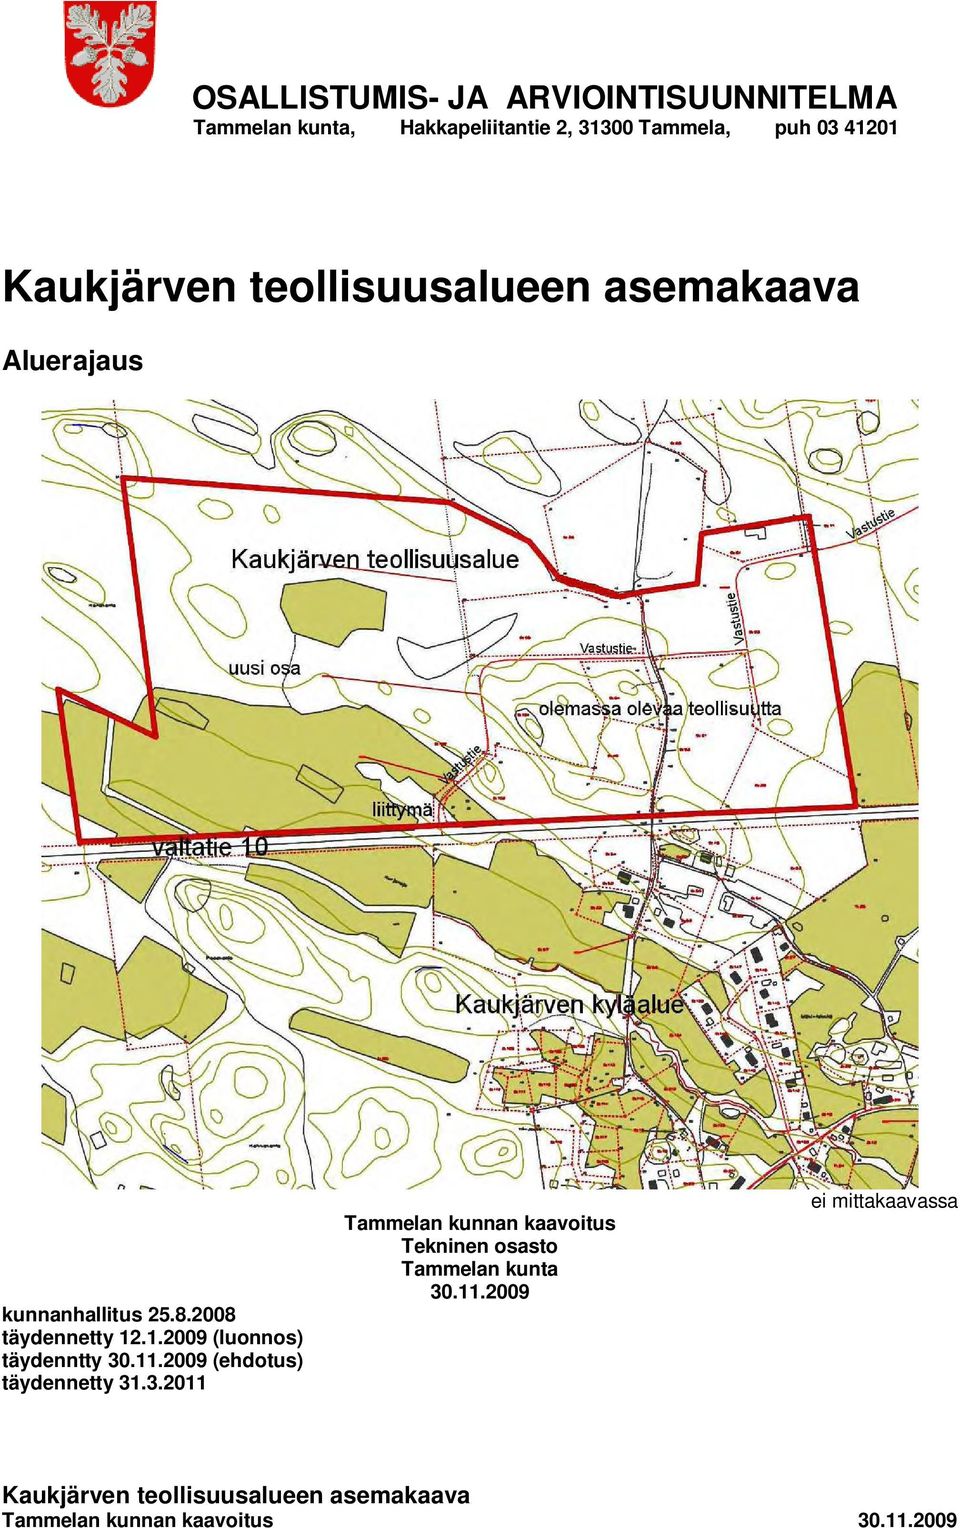 .1.2009 (luonnos) täydenntty 30.11.2009 (ehdotus) täydennetty 31.3.2011 Tammelan kunnan kaavoitus Tekninen osasto Tammelan kunta 30.